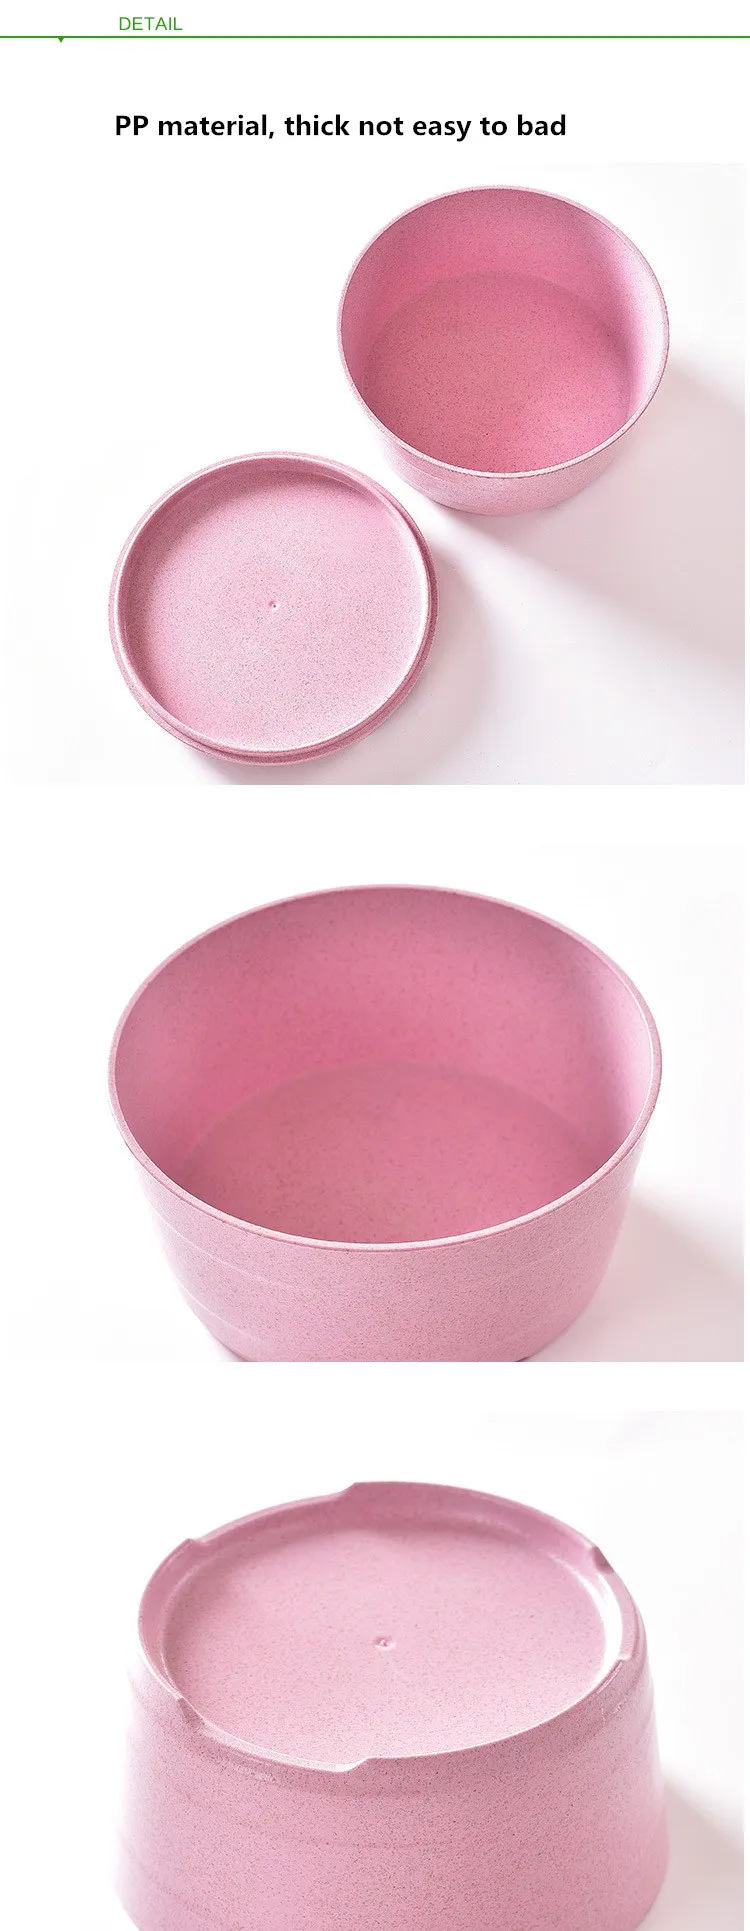 HOMETREE 3 цвета домашняя Экологичная пшеничная соломенная рисовая миска с крышкой Новая креативная чаша-капля здоровая посуда кухонная посуда H496